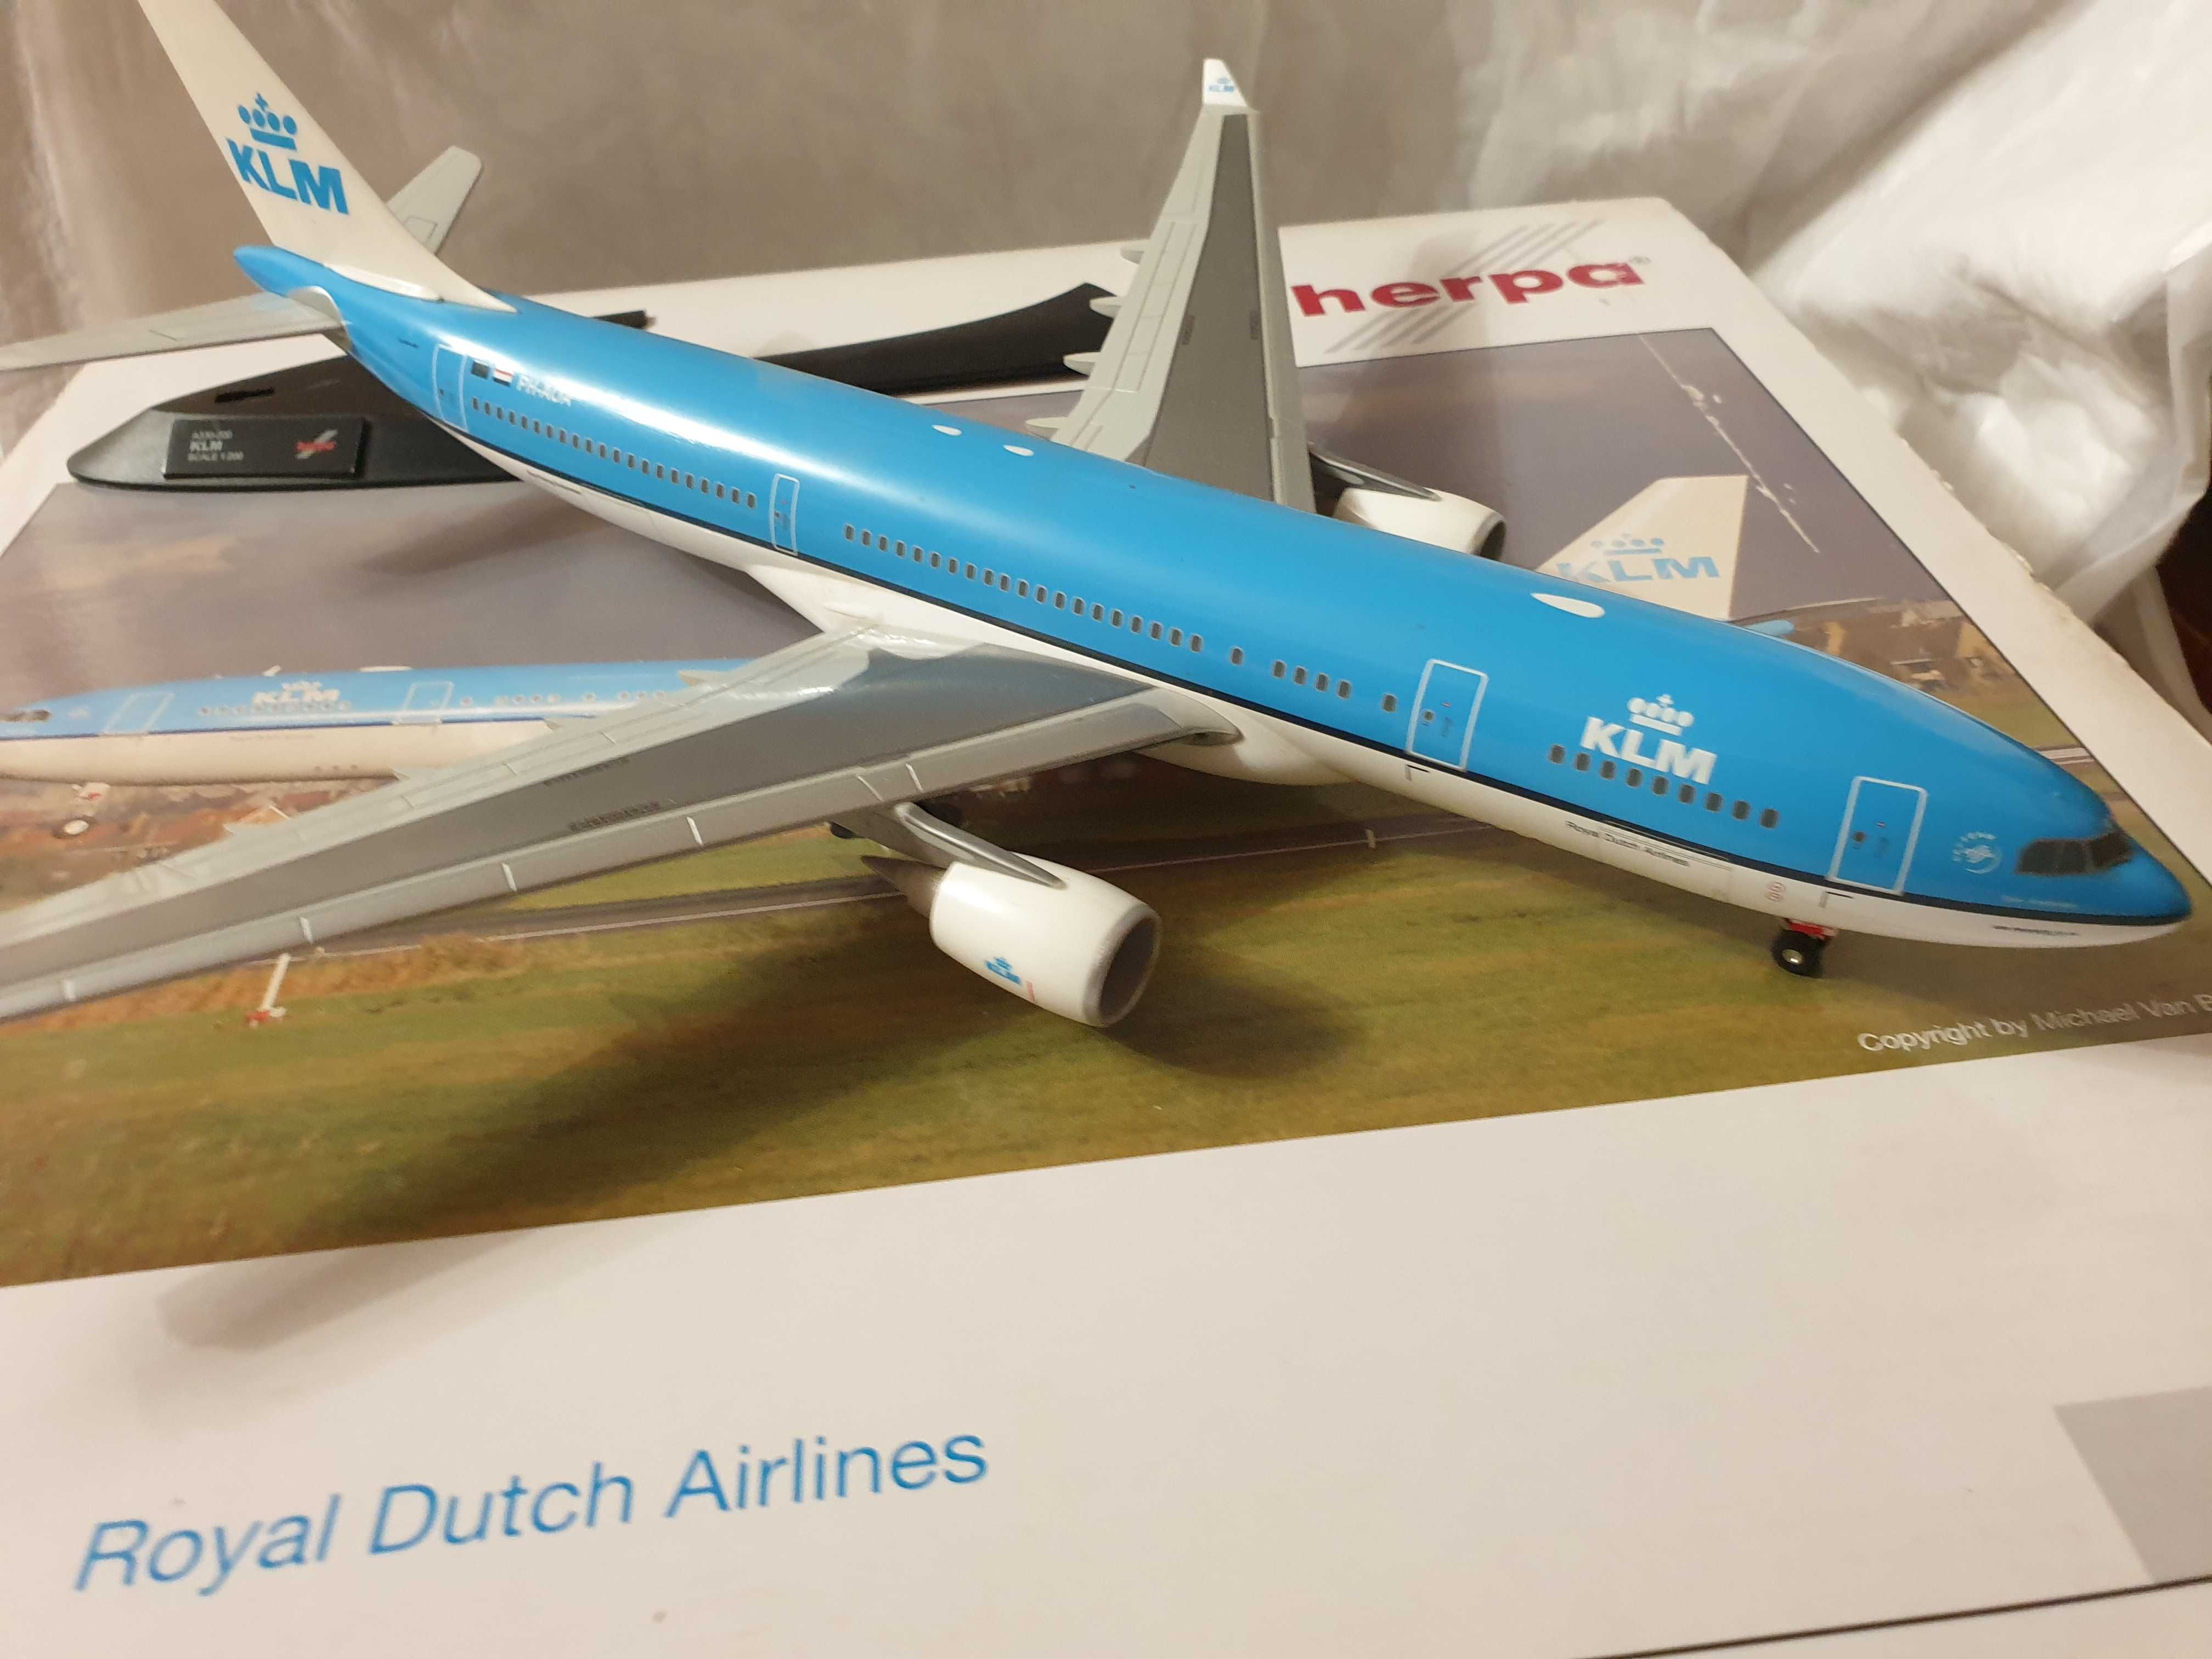 1/200 Herpa 551847 Airbus 330-200 KLM